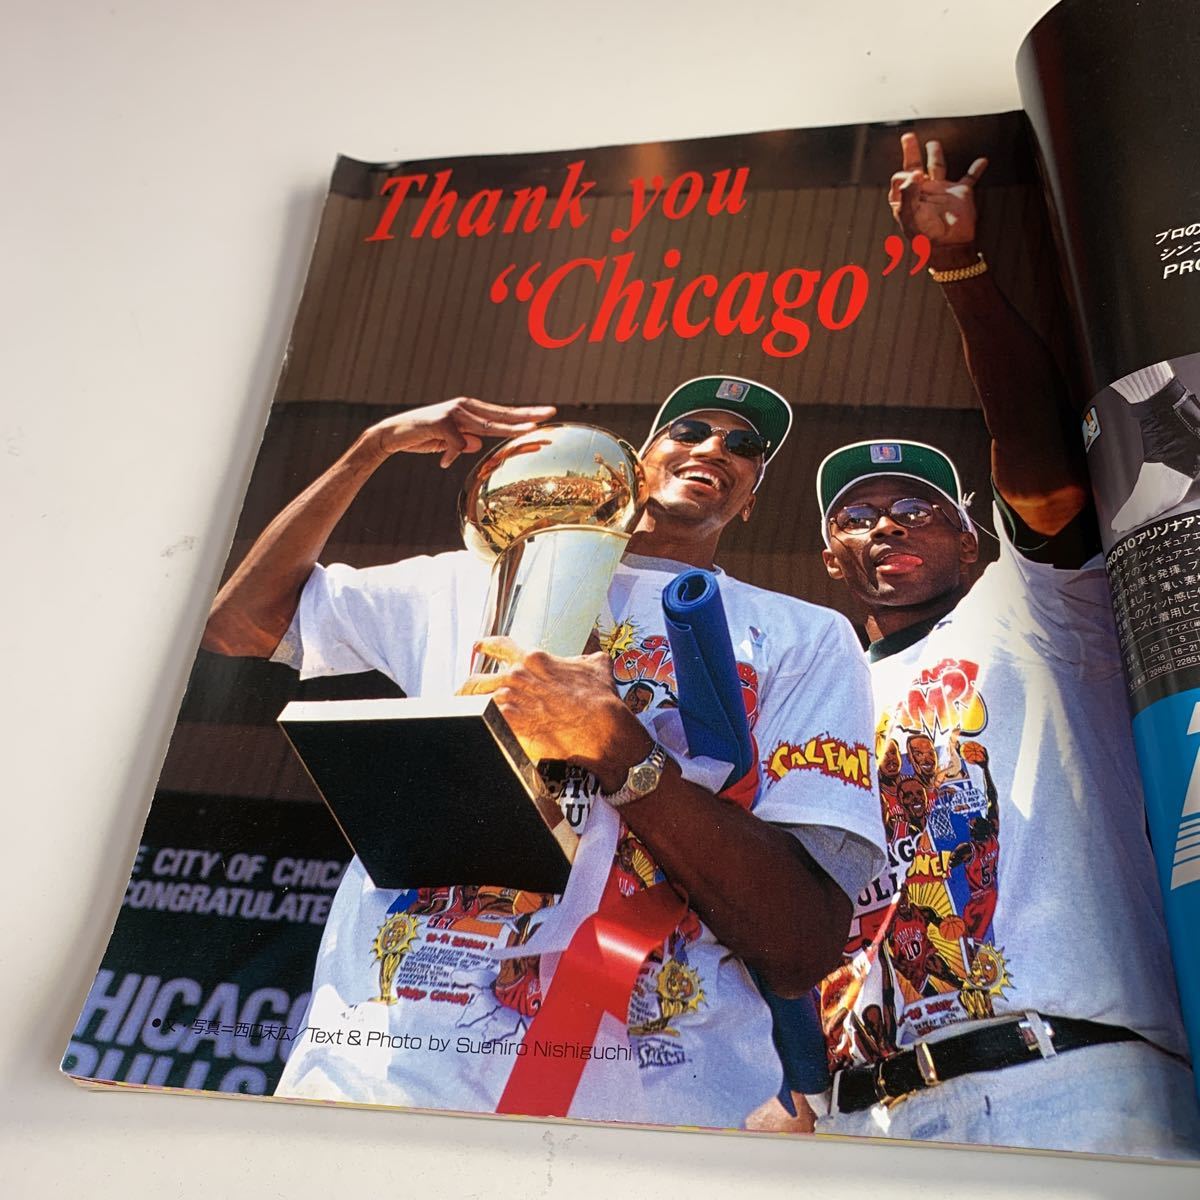 Y27.025 world баскетбол волейбол журнал 7 месяц номер экстренный больше .No.5 Chicago bruzNBA 1993 год Michael Jordan воздушный walk 